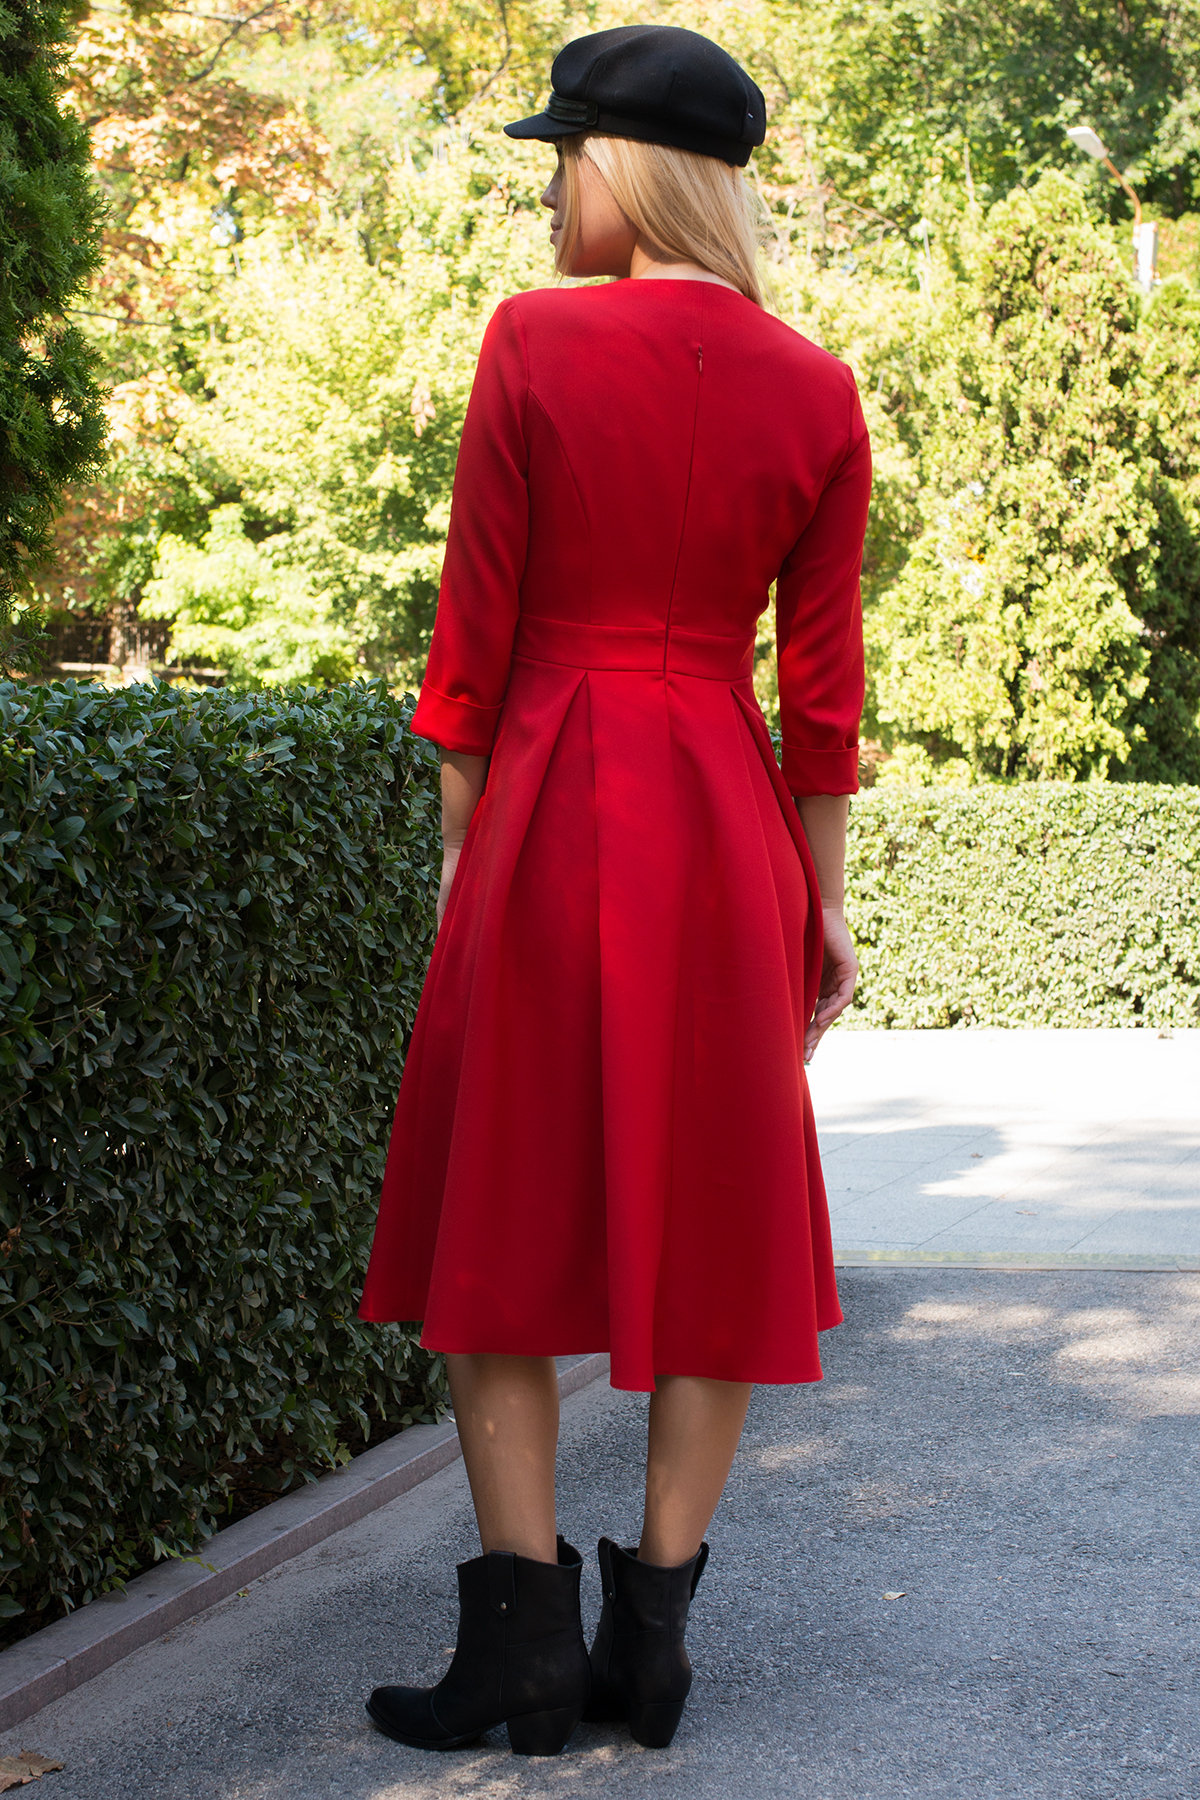 Платье с юбкой-солнце Аризона 7849 АРТ. 43842 Цвет: Красный - фото 3, интернет магазин tm-modus.ru